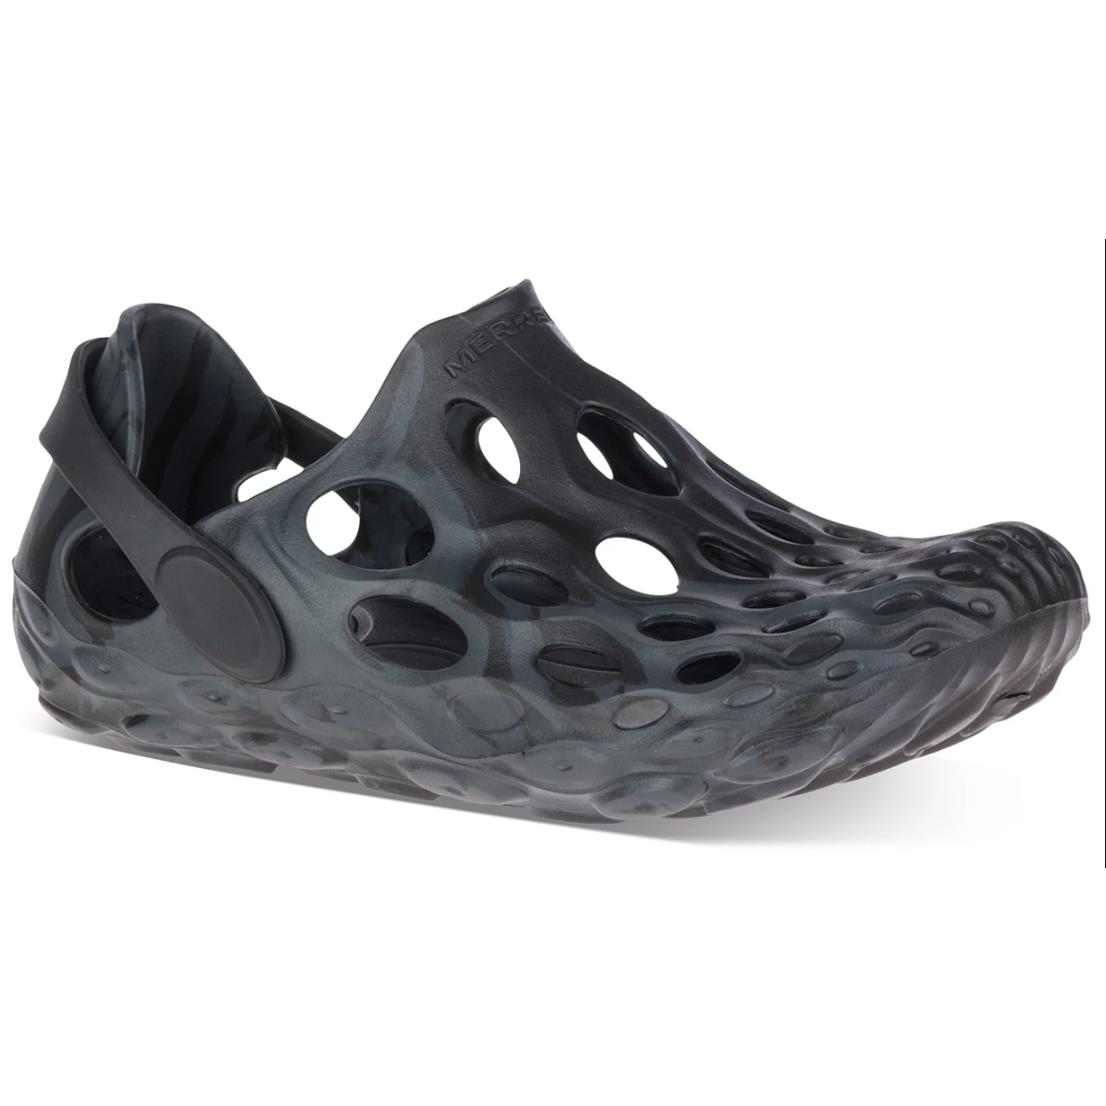 Merrell Hydro Moc Water Shoe Marbled Black Single Density Women s